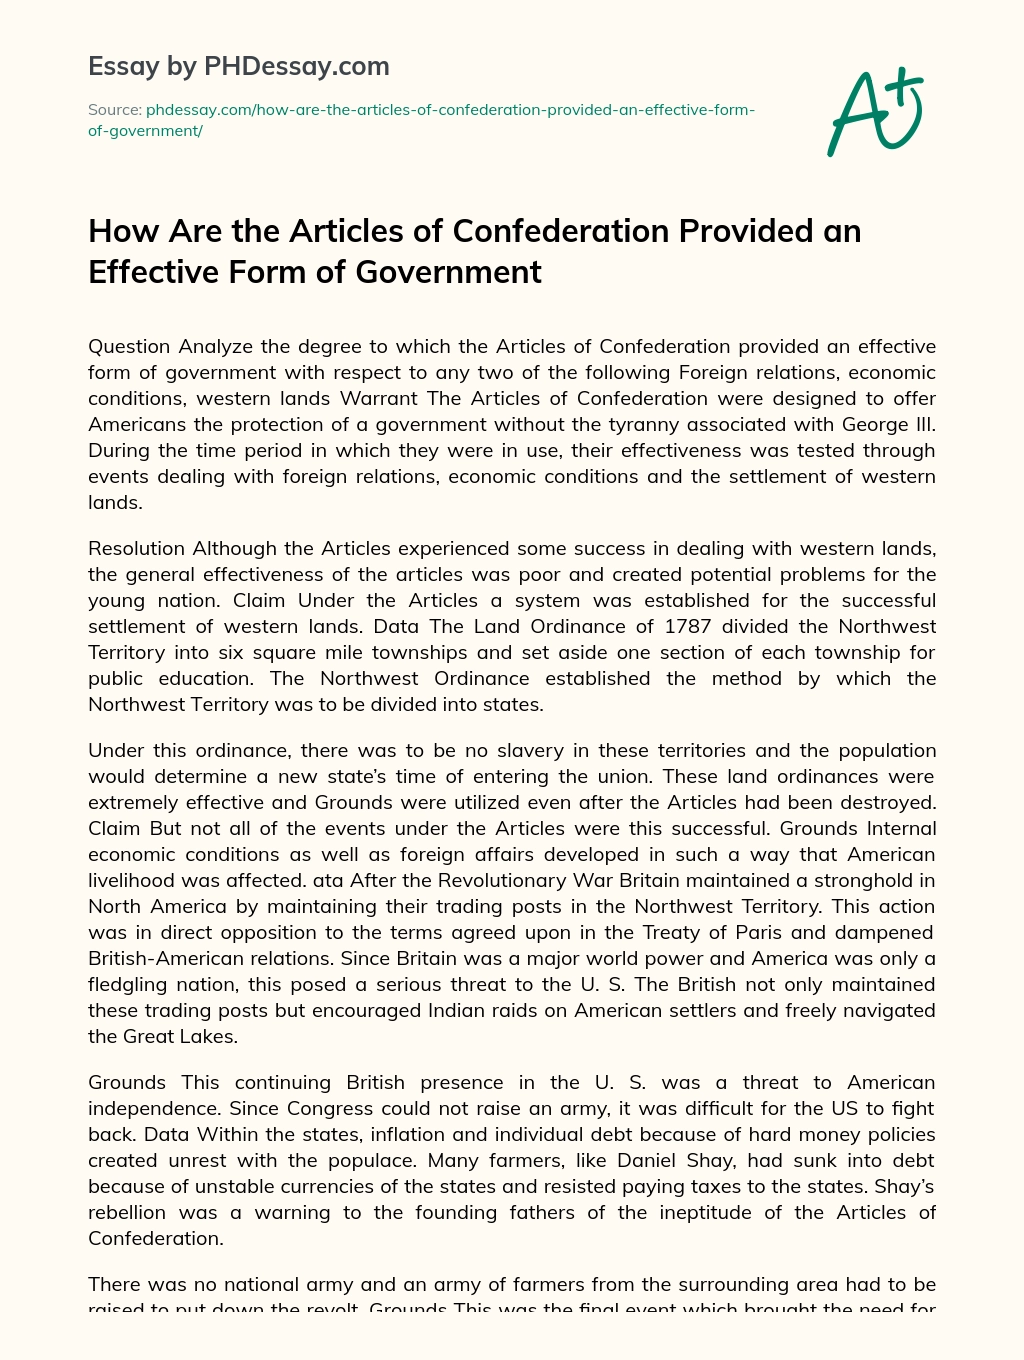 articles of confederation essay